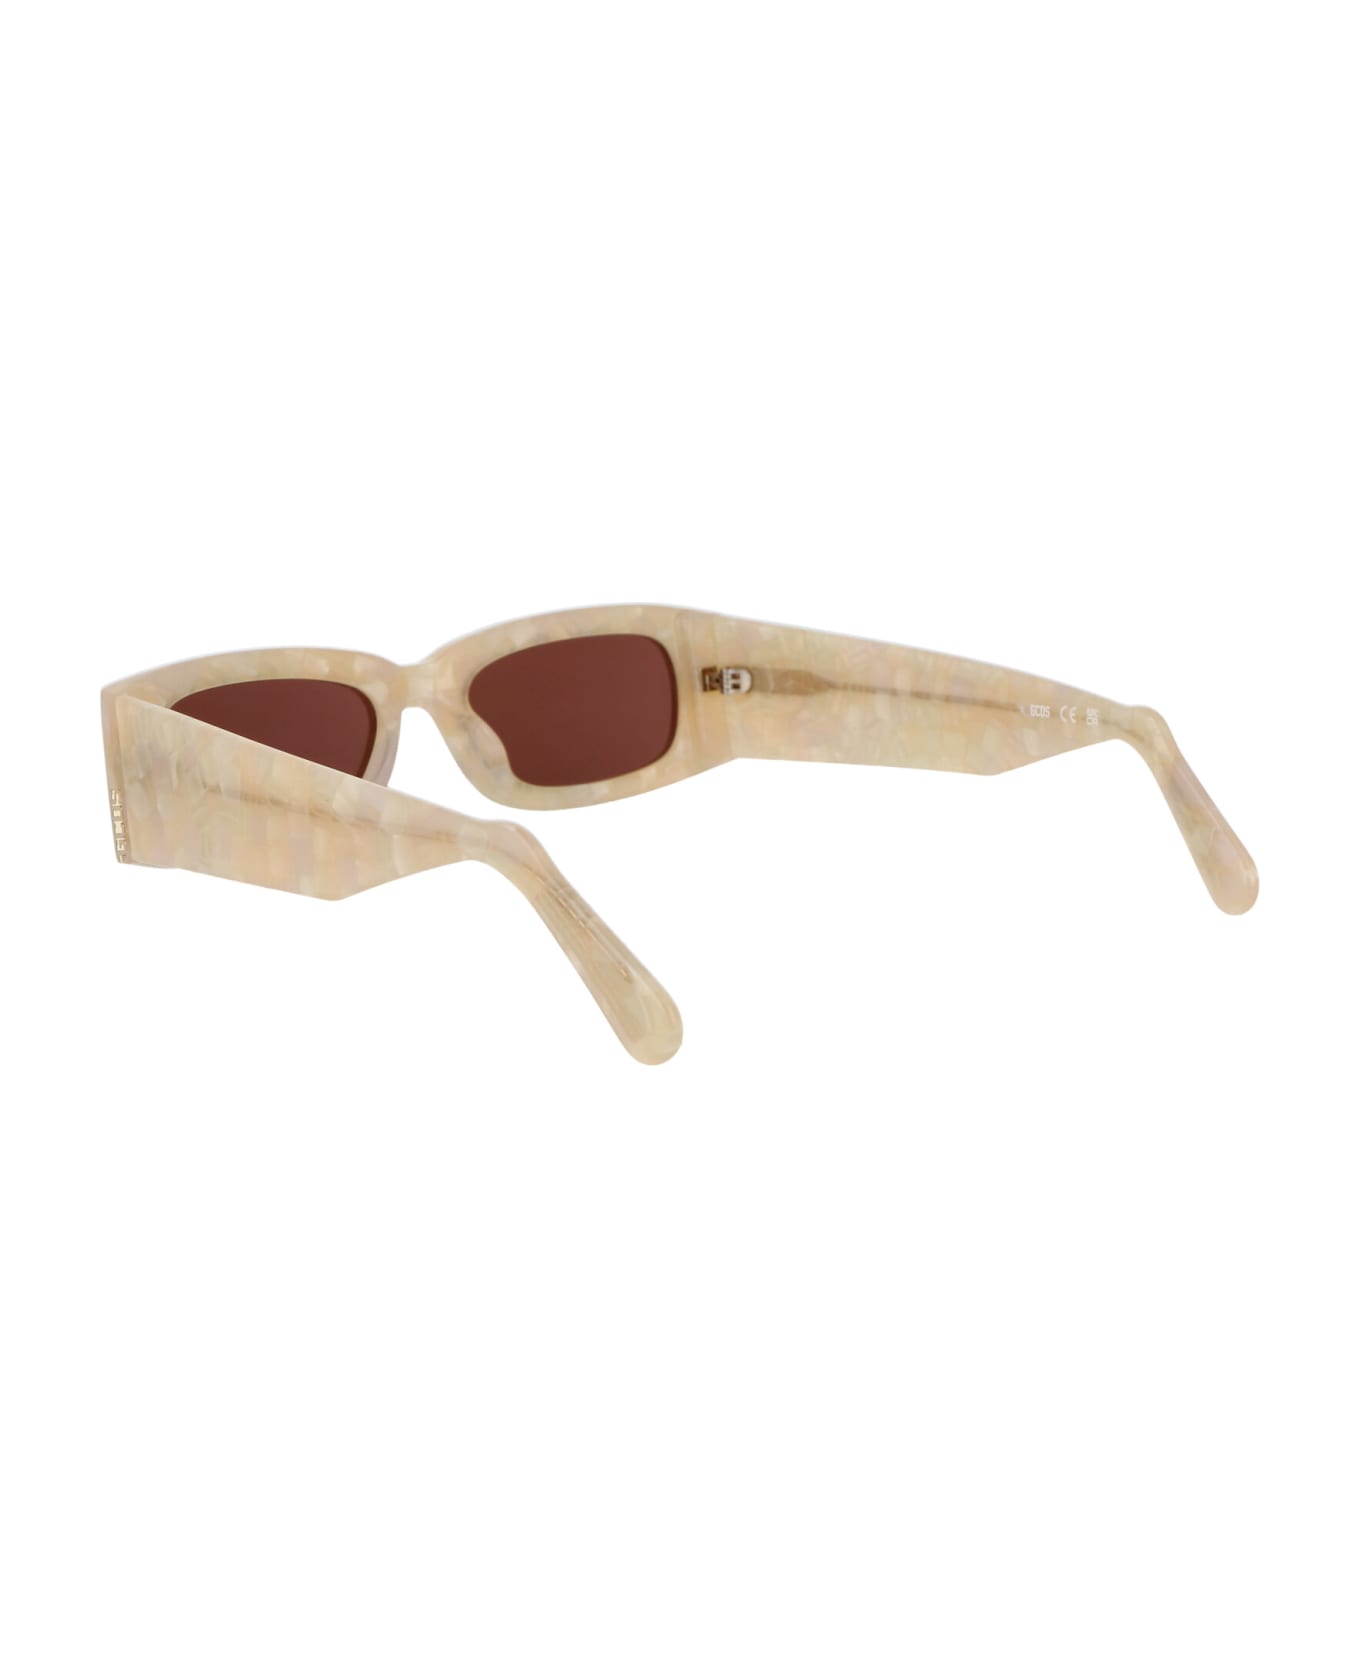 GCDS Gd0020 Sunglasses - 25S Avorio/Bordeaux